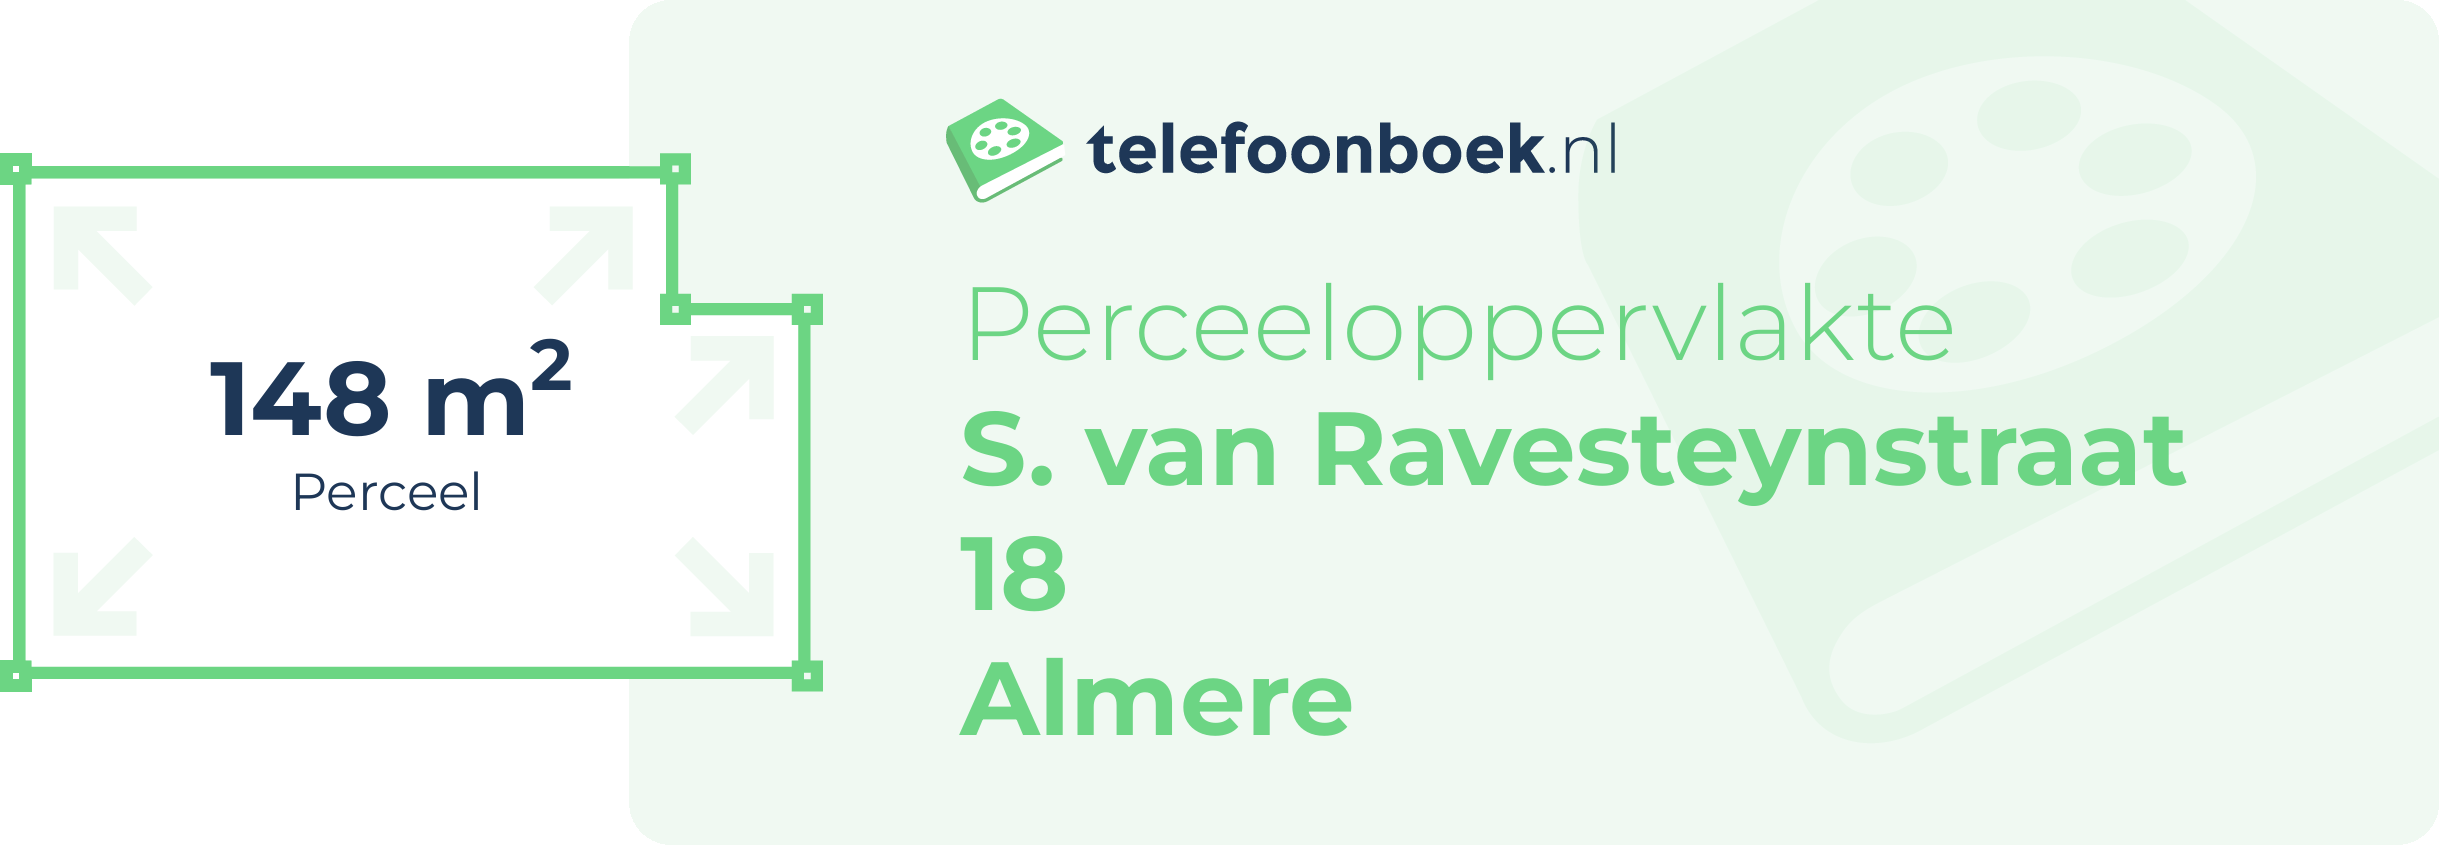 Perceeloppervlakte S. Van Ravesteynstraat 18 Almere